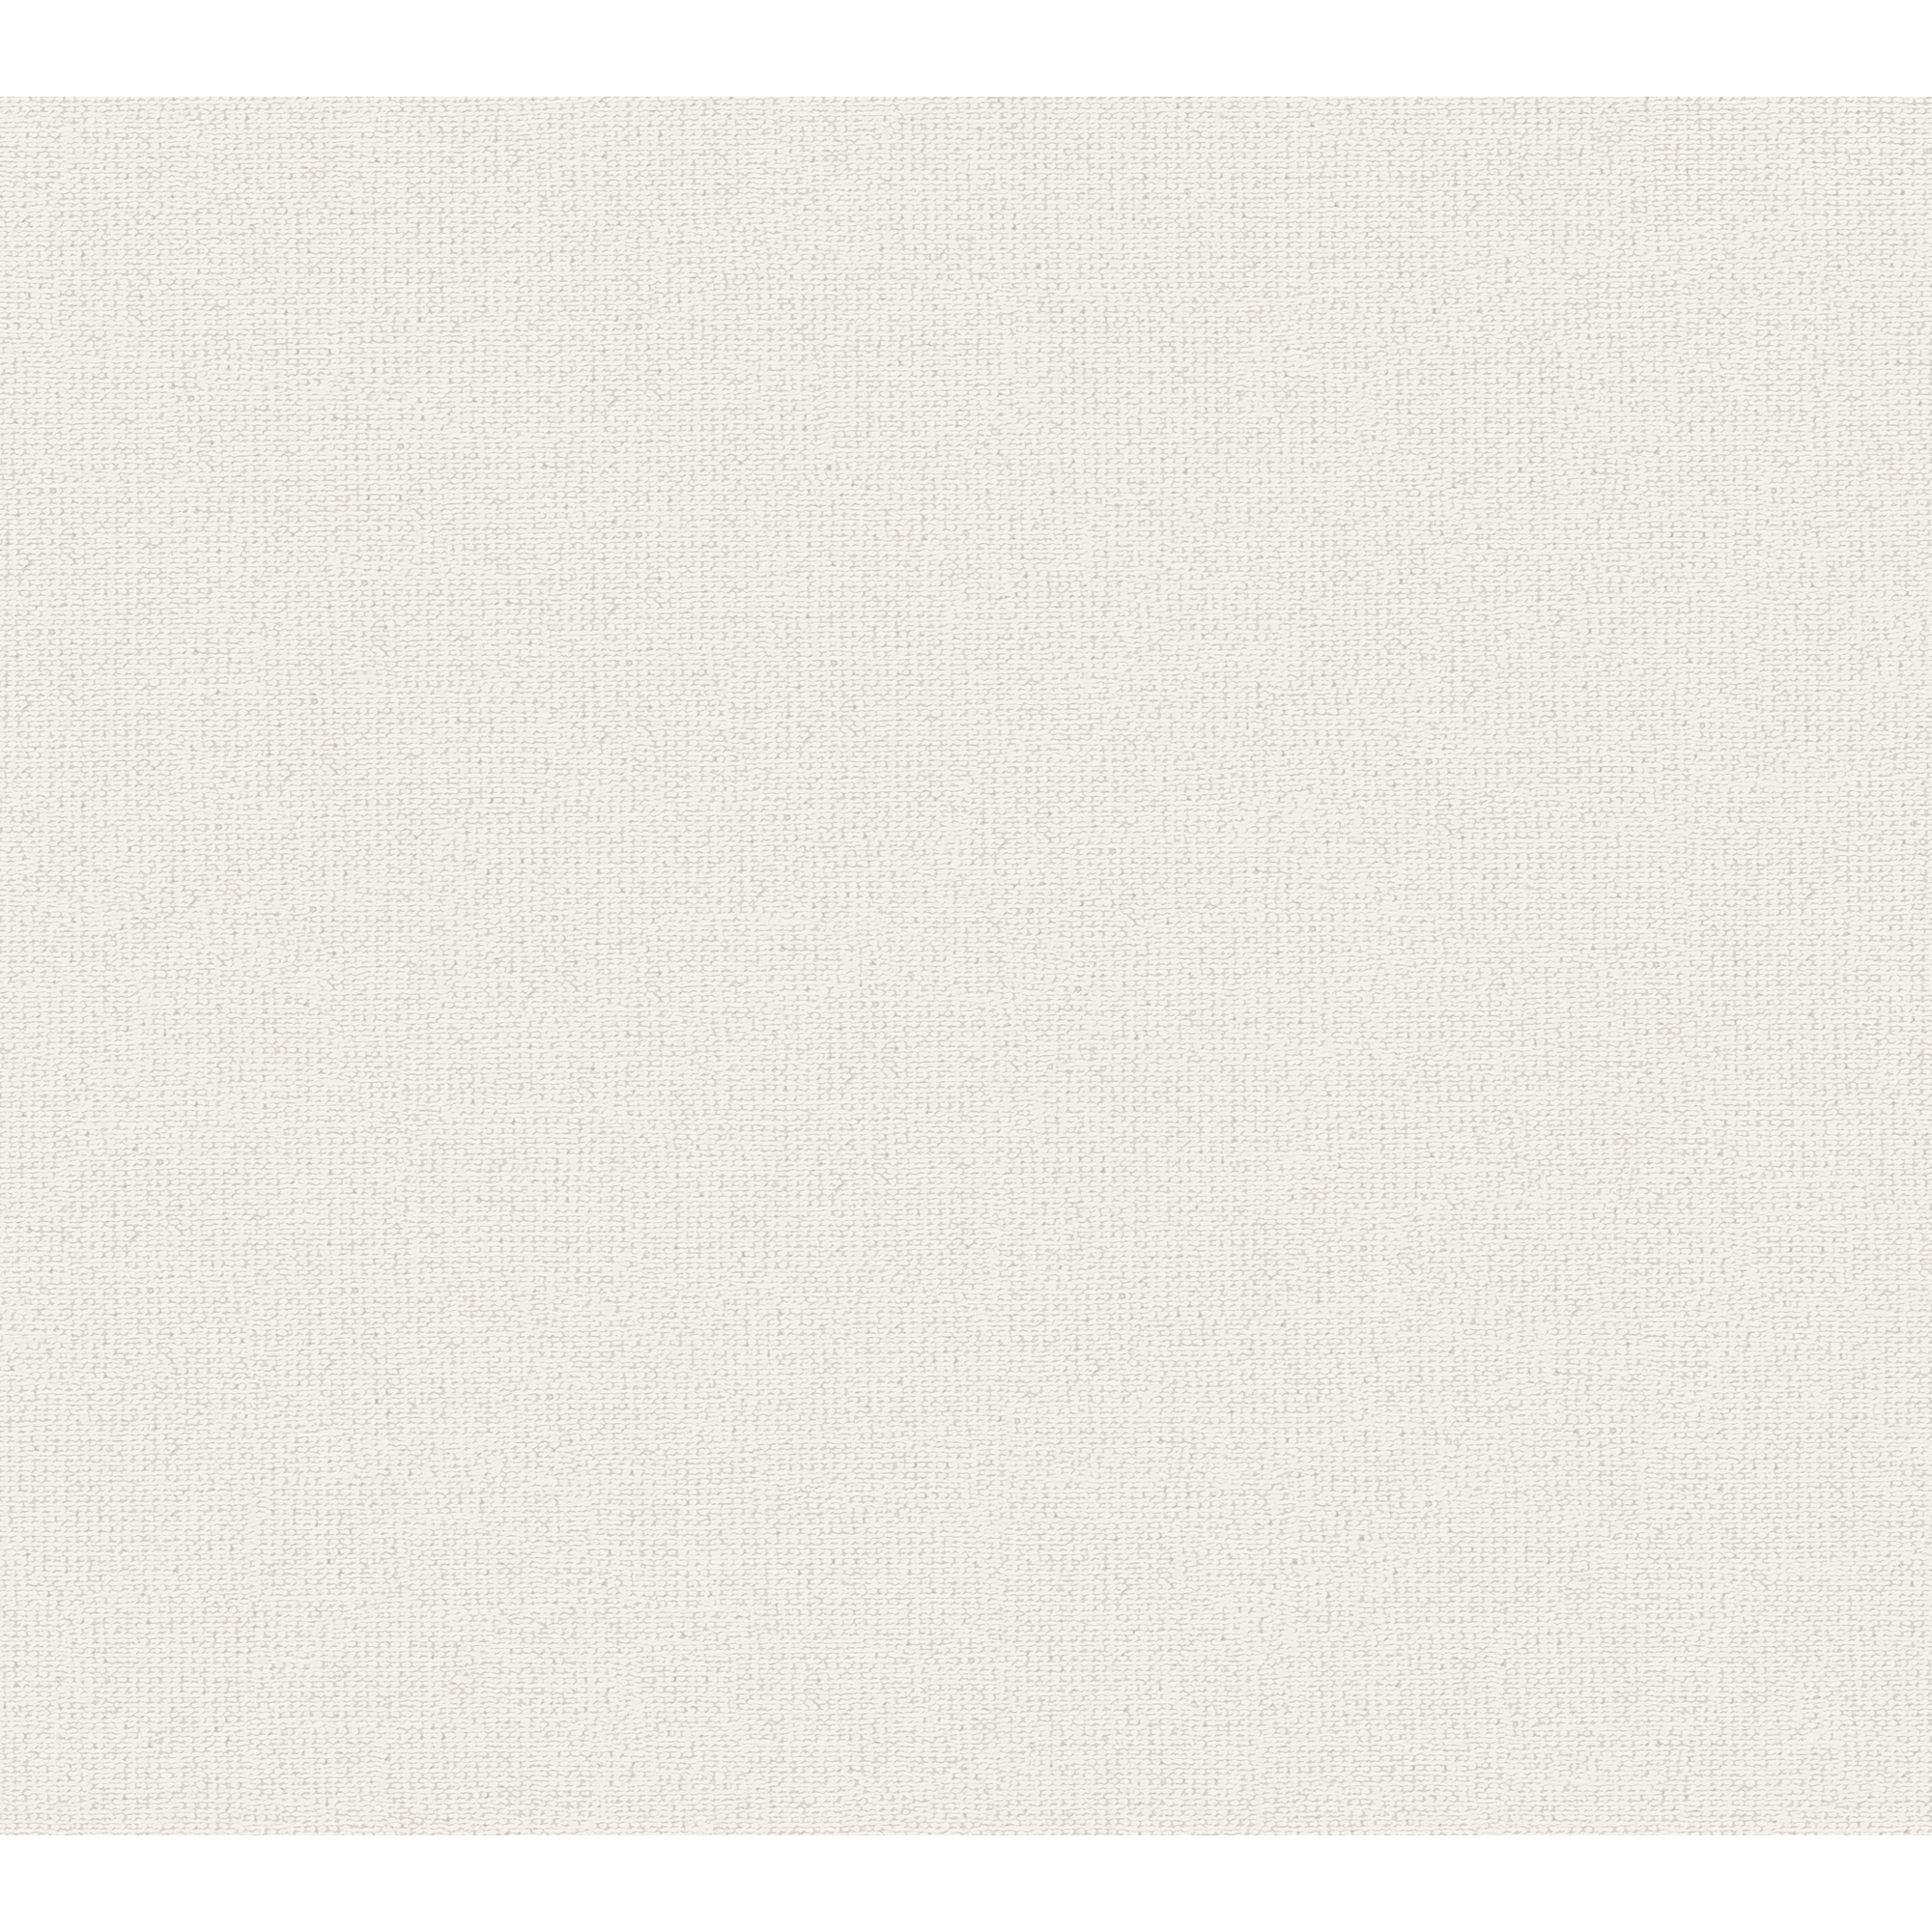 Vliestapete 'Attractive 2' Uni strukturiert weiß/creme 10,05 x 0,53 m + product picture